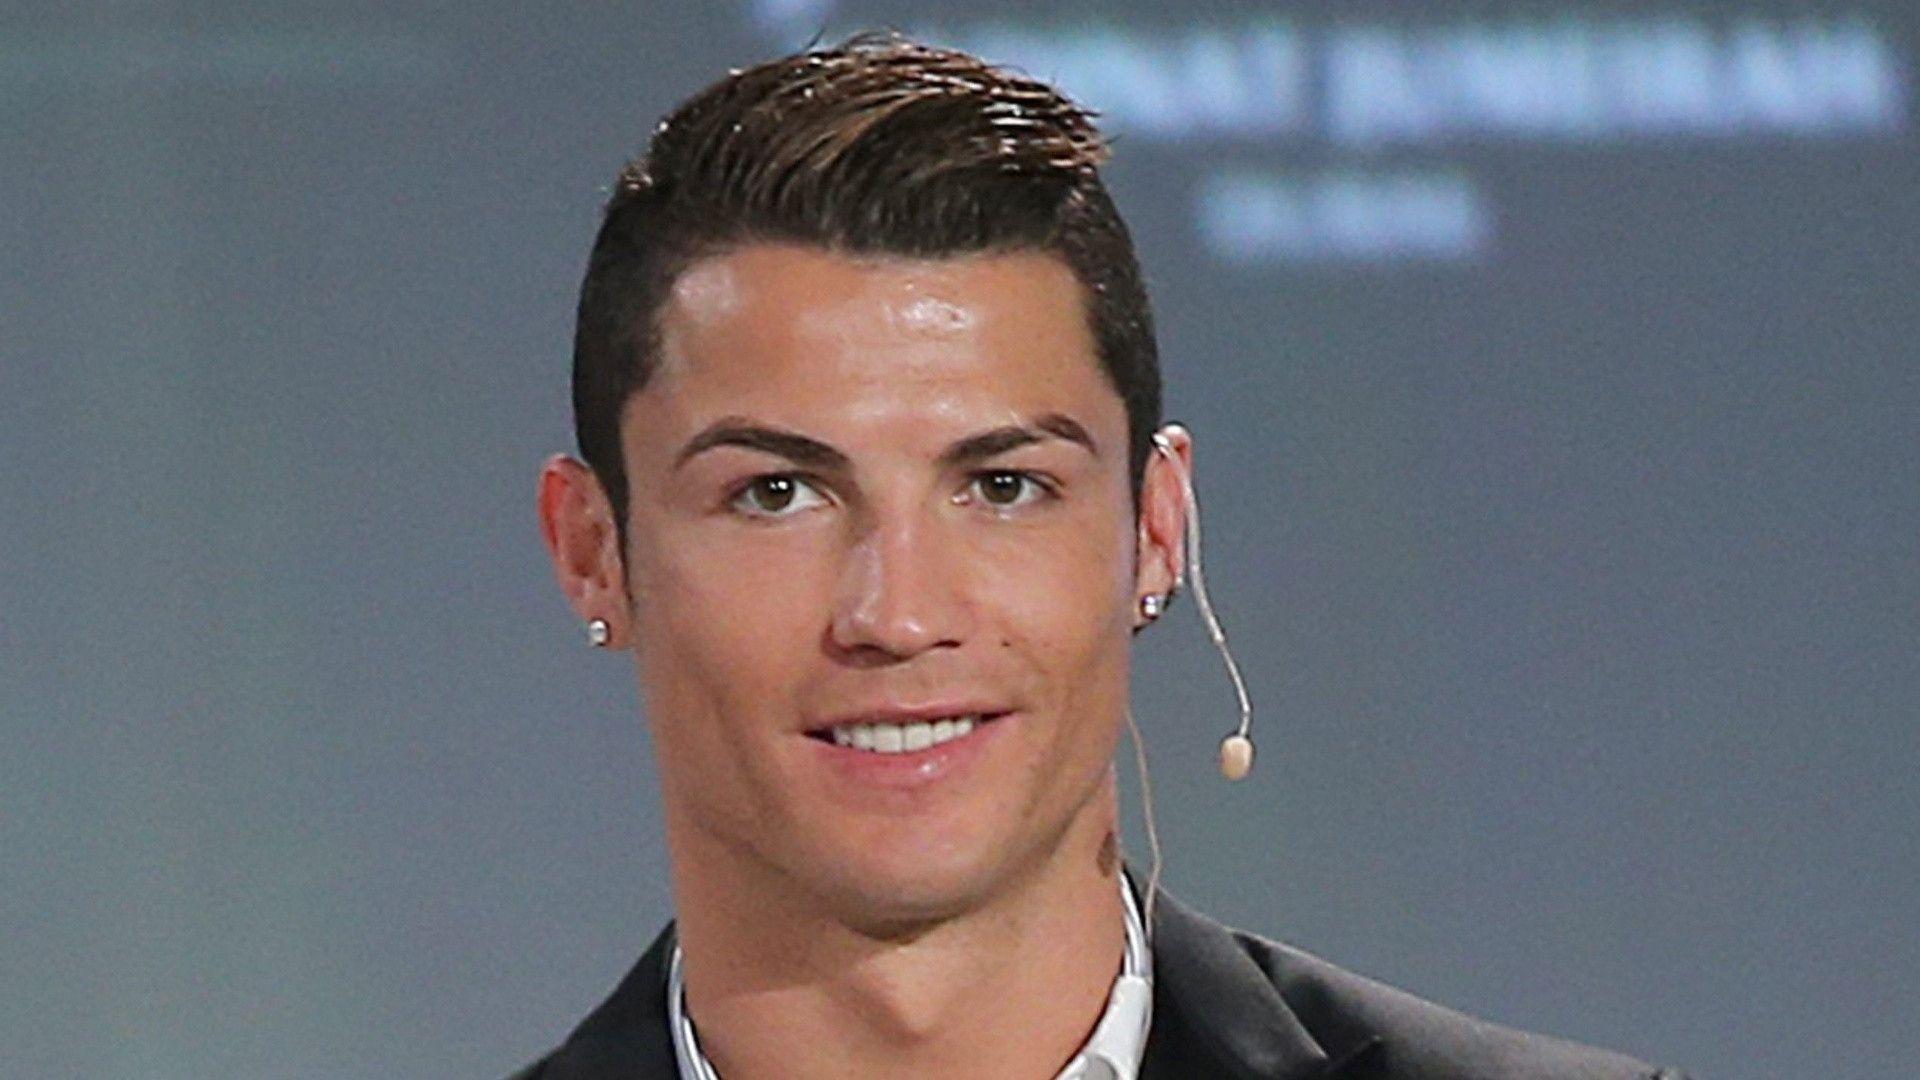 Cristiano Ronaldo New Hairstyles 2014 Sporteology